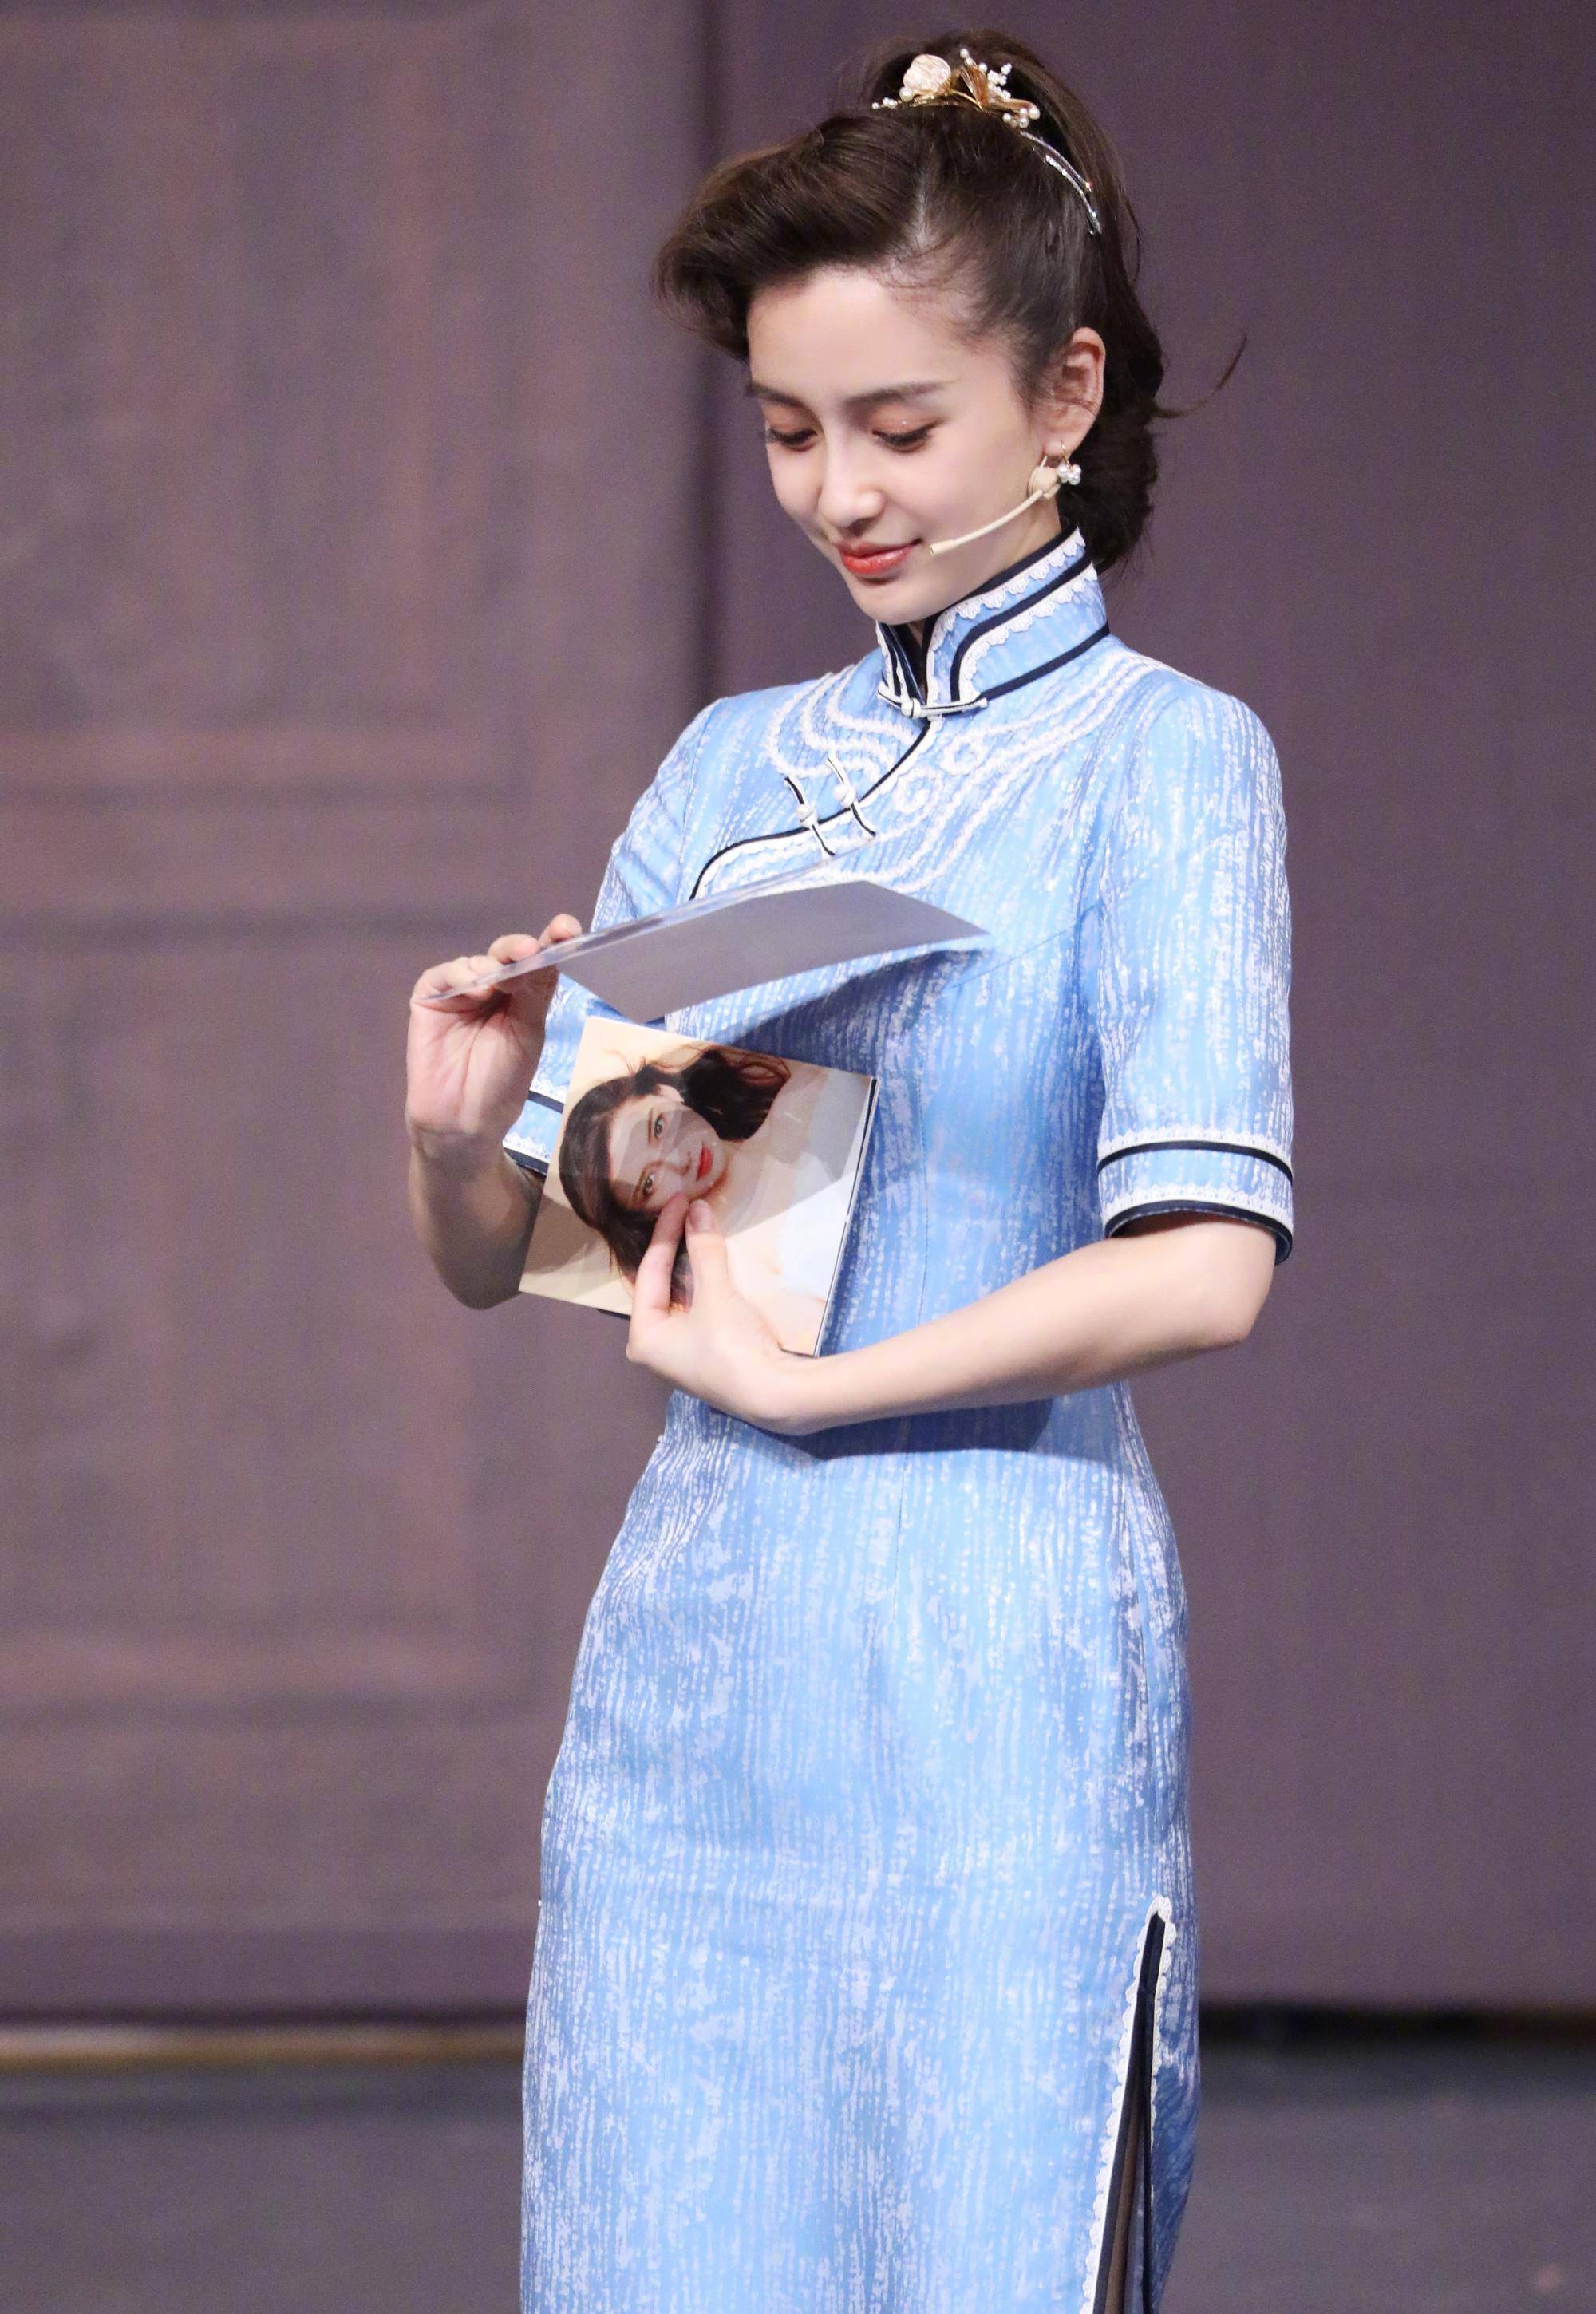 蓝色的旗袍相对于米白色旗袍的淡雅来说会更显年轻,穿在杨颖身上也是